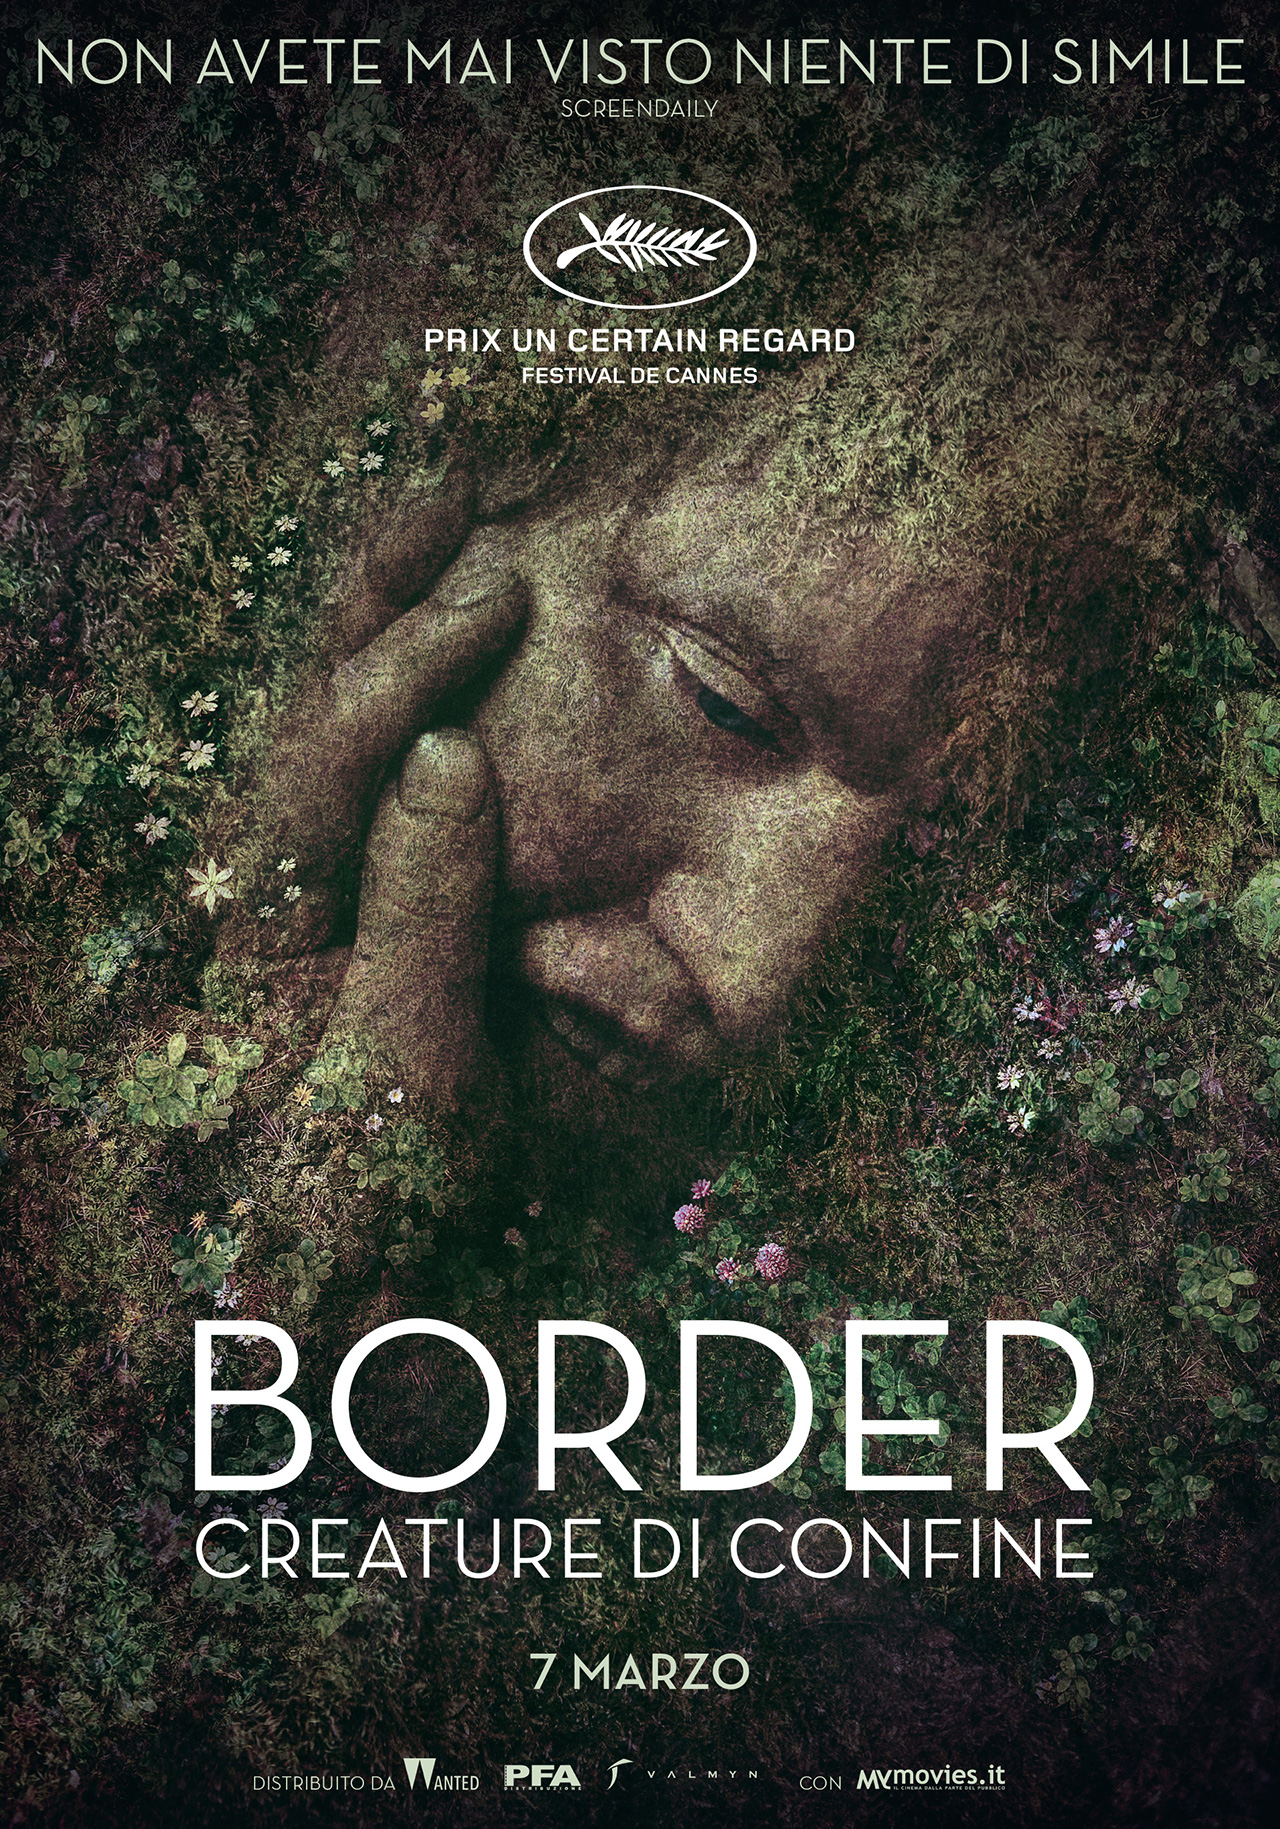 Border (2018) สายพันธุ์ลับ สัมผัสพิศวง